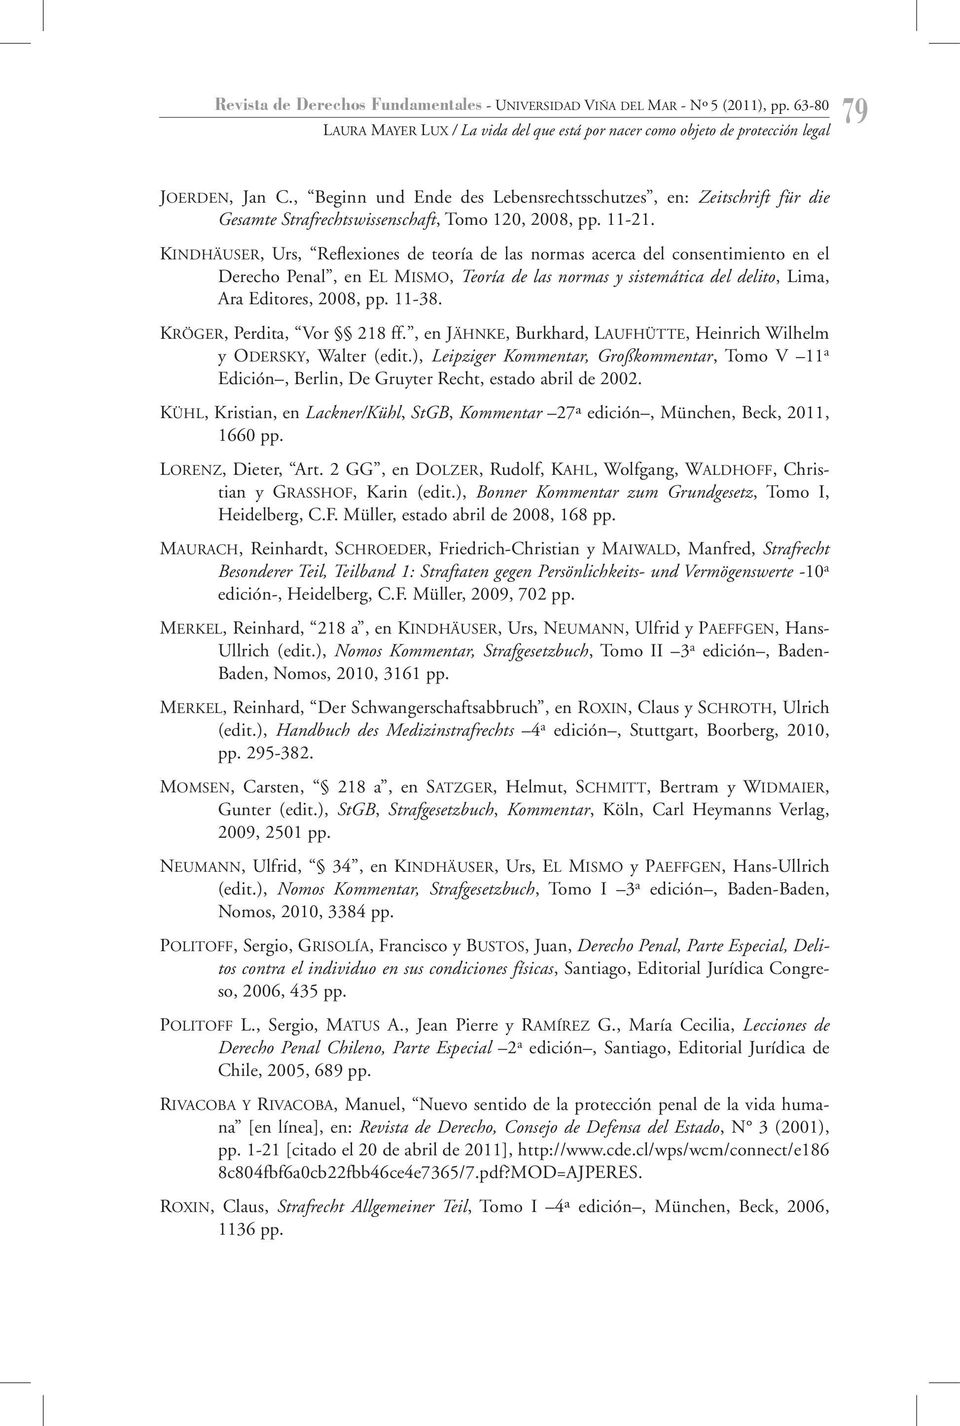 KINDHÄUSER, Urs, Reflexiones de teoría de las normas acerca del consentimiento en el Derecho Penal, en EL MISMO, Teoría de las normas y sistemática del delito, Lima, Ara Editores, 2008, pp. 11-38.